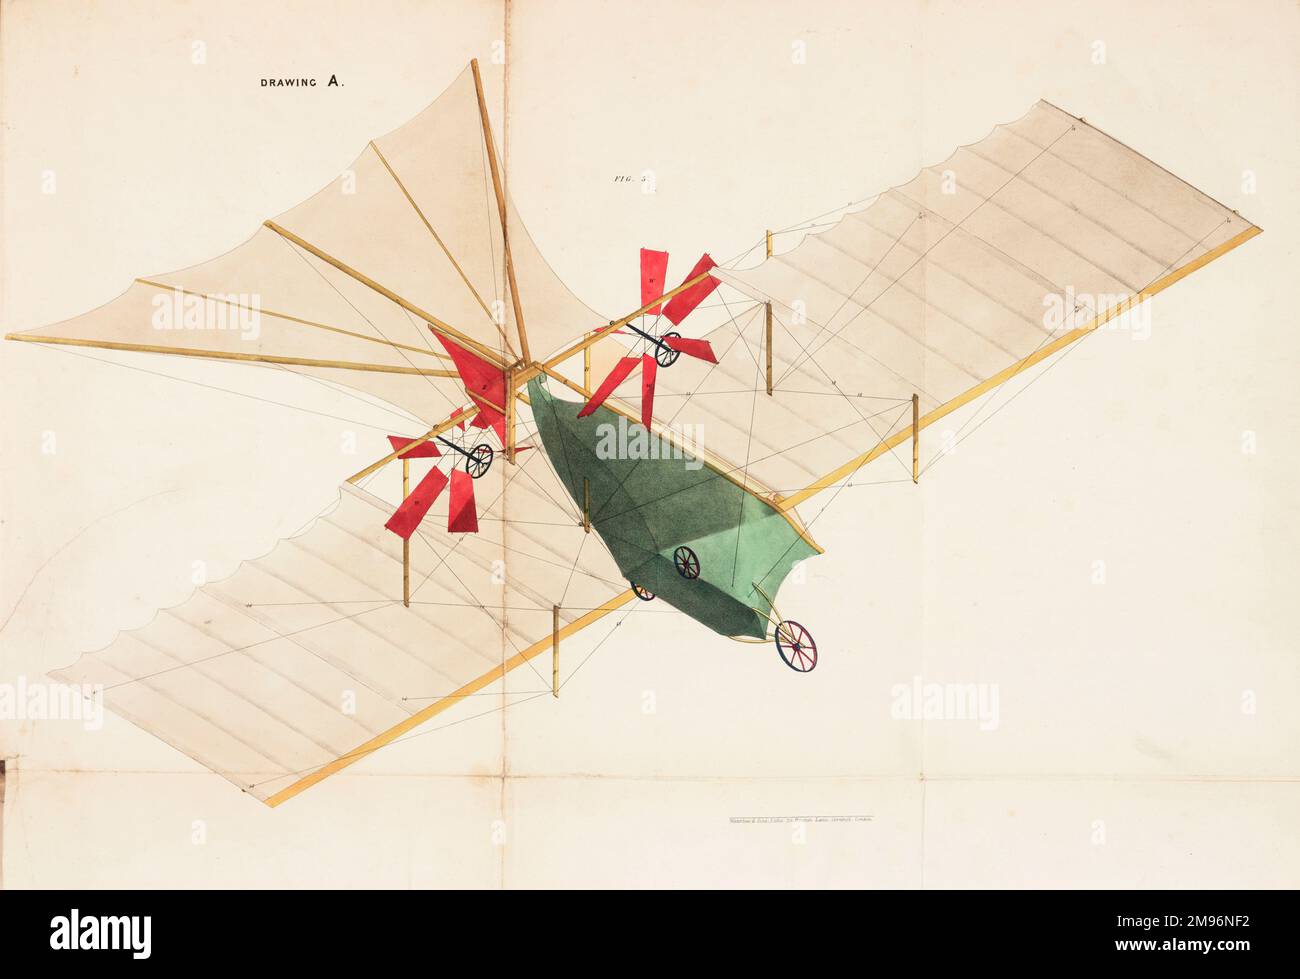 Il carrello del vapore aereo -- vista dal basso con tessuto di copertura in posizione. Questa macchina volante fu brevettata da William Samuel Henson (1812-1888) e John Stringfellow (1799-1883) nel 1842. Foto Stock